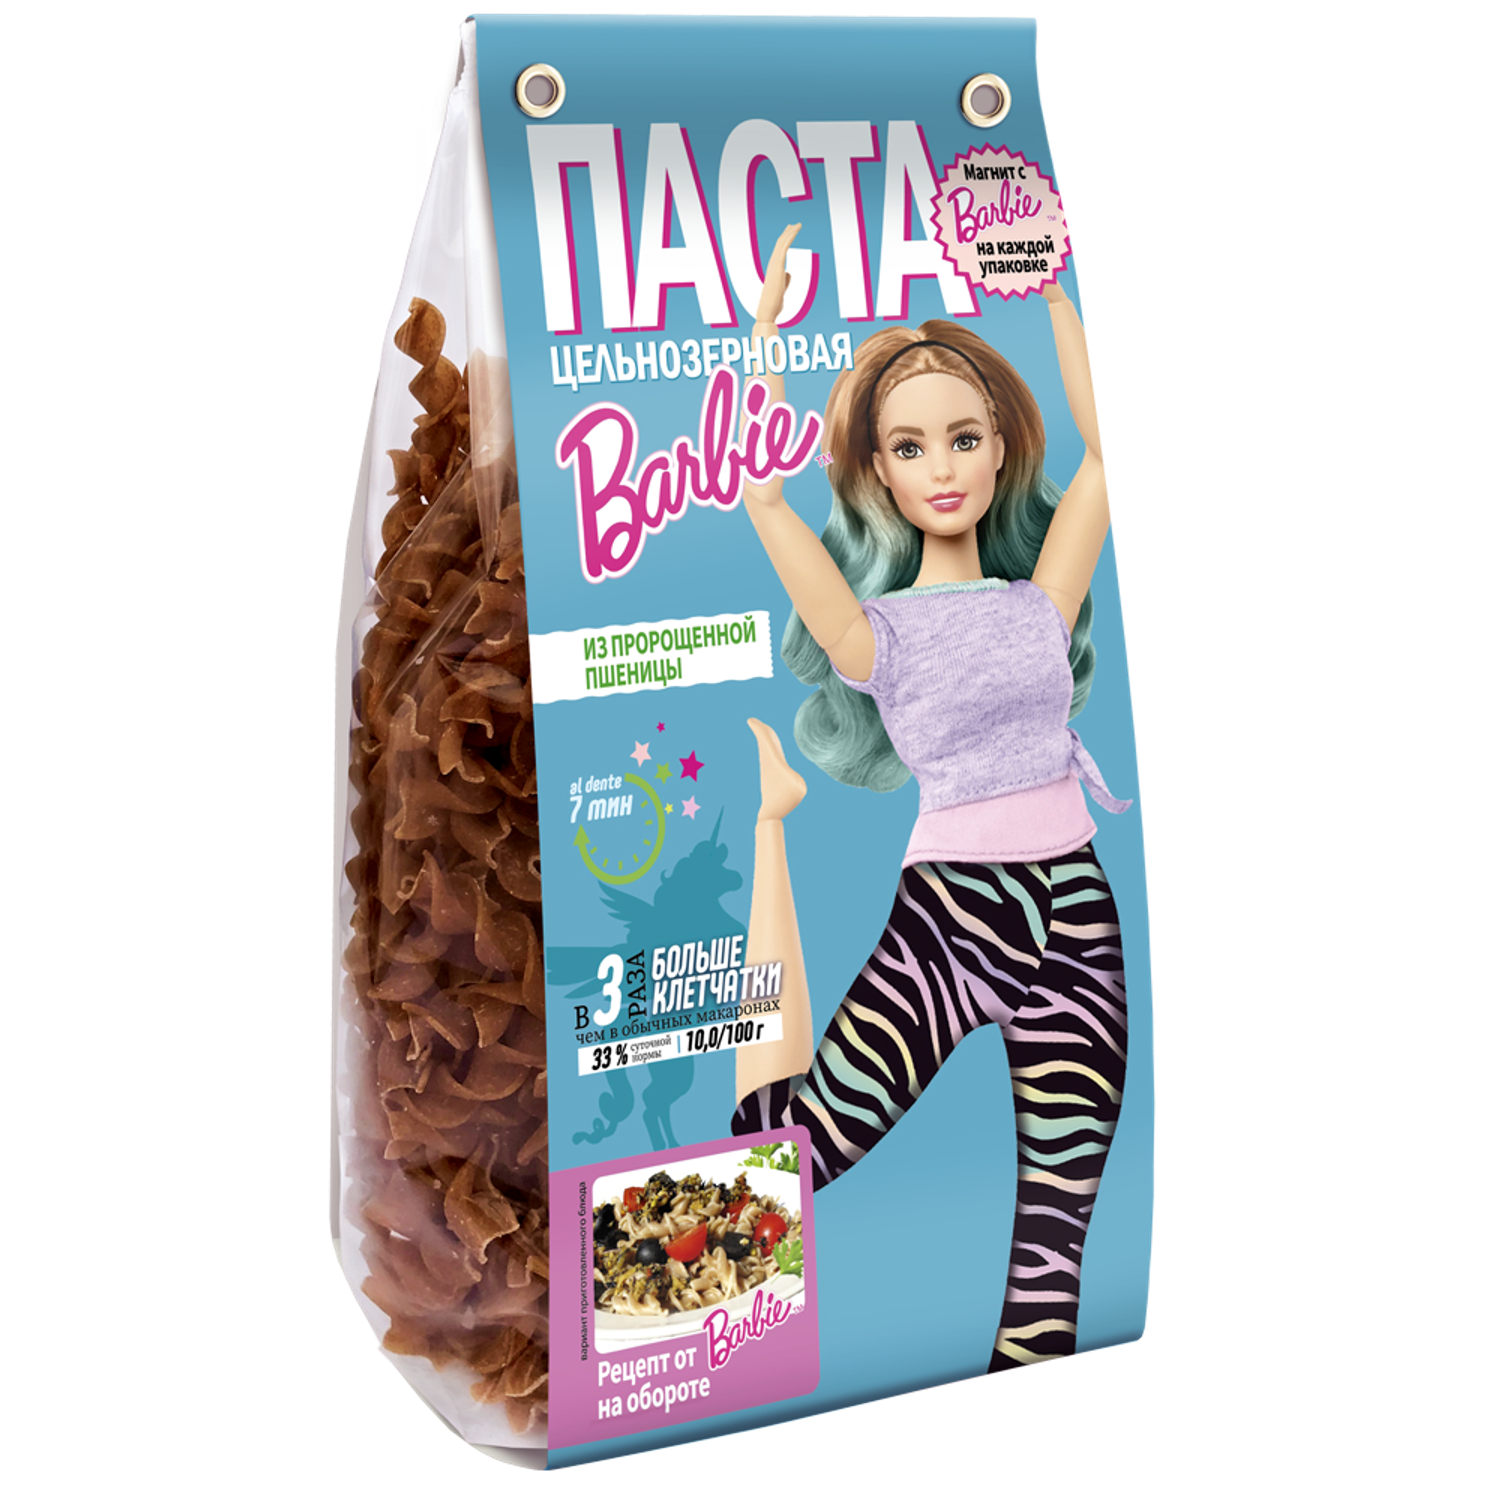 Макароны детские Barbie цельнозерновые из пророщенной пшеницы - фото 1